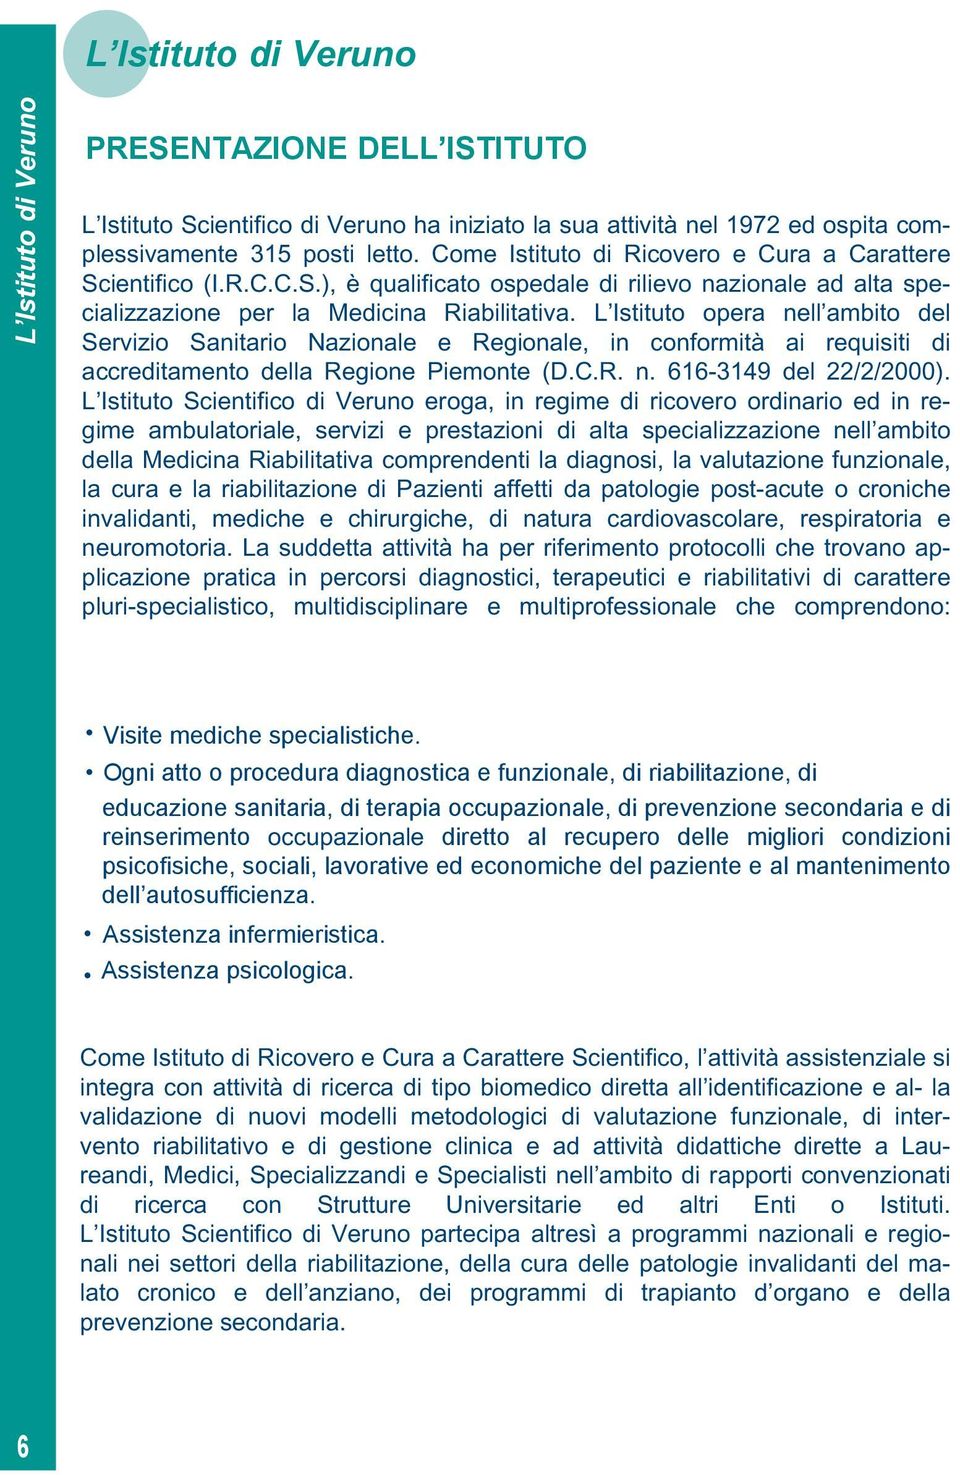 L Istituto opera nell ambito del Servizio Sanitario Nazionale e Regionale, in conformità ai requisiti di accreditamento della Regione Piemonte (D.C.R. n. 616-3149 del 22/2/2000).